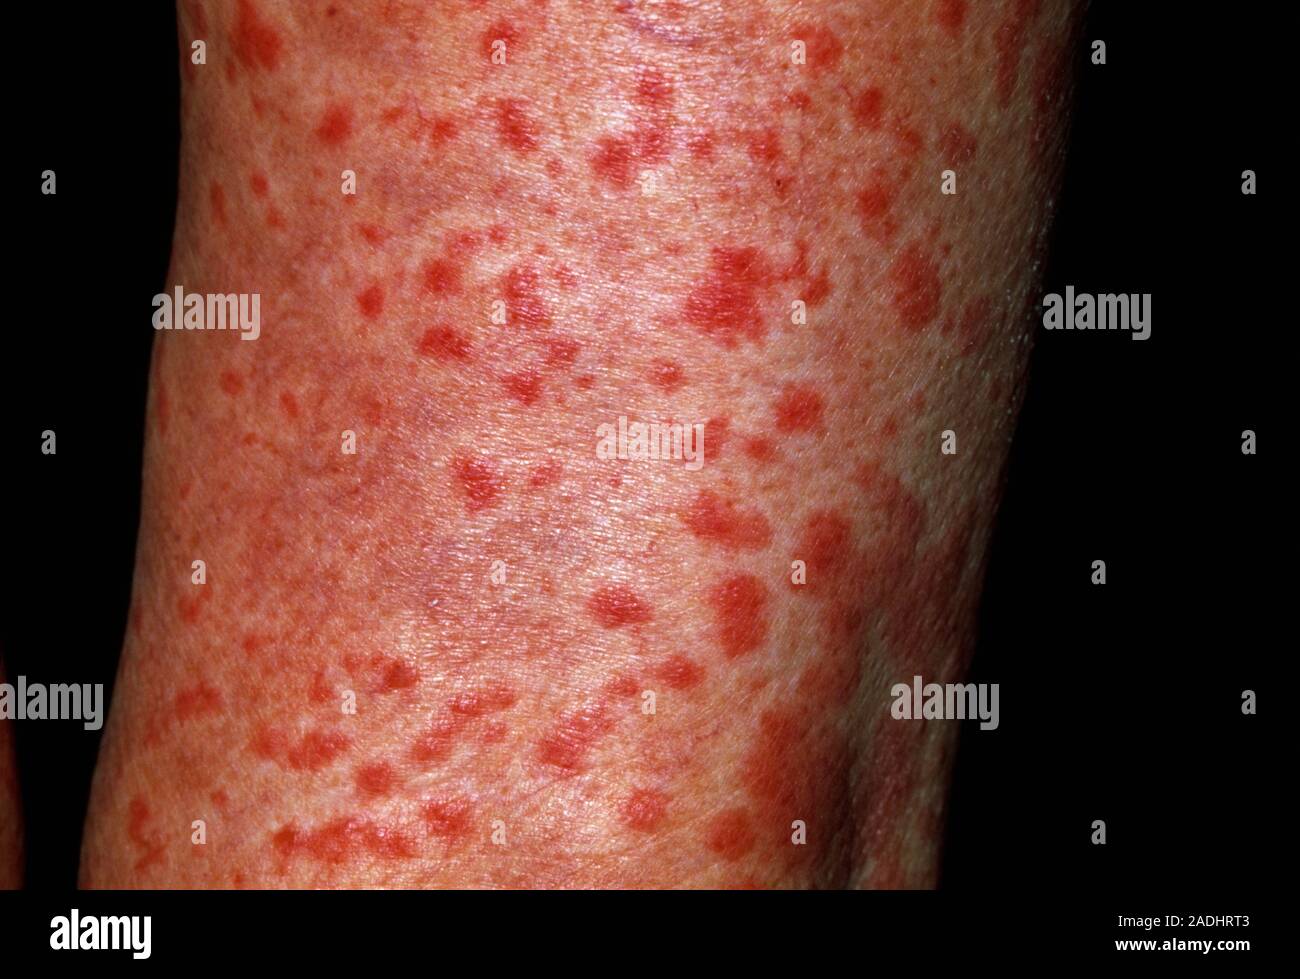 Arzneimittel Allergie. Ausschlag auf einer 80-year-old Man's Bein,  verursacht durch eine allergische Reaktion auf das Antimykotikum Medikament  Terbinafin. Diese Droge wird verwendet, um gemeinsame zu behandeln  Stockfotografie - Alamy